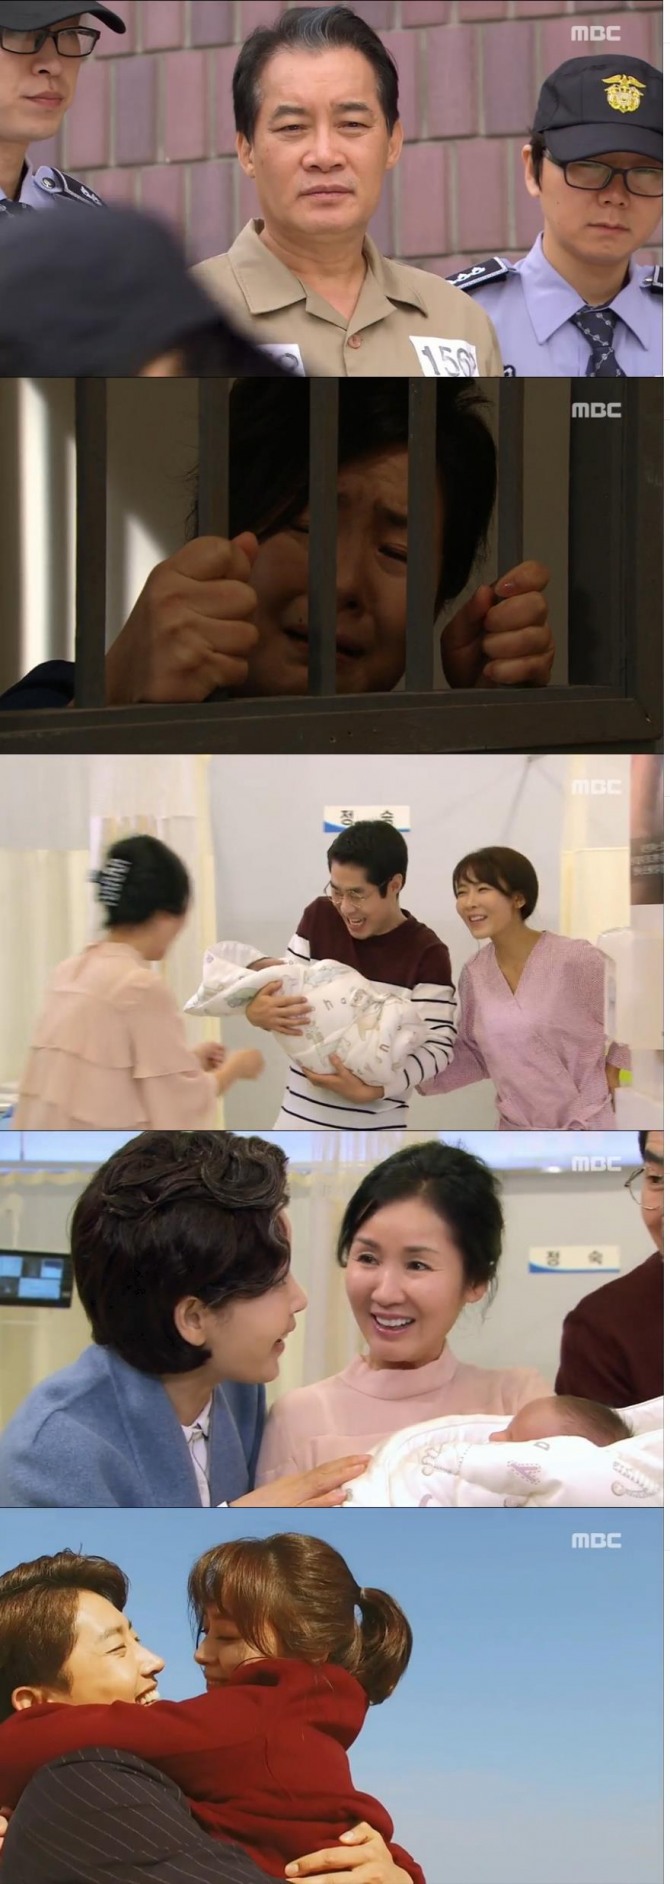 지난 6개월 간 방송된 MBC 아침 일일드라마 '좋은 사람'이 28일 종방했다./사진=MBC 방송 캡처